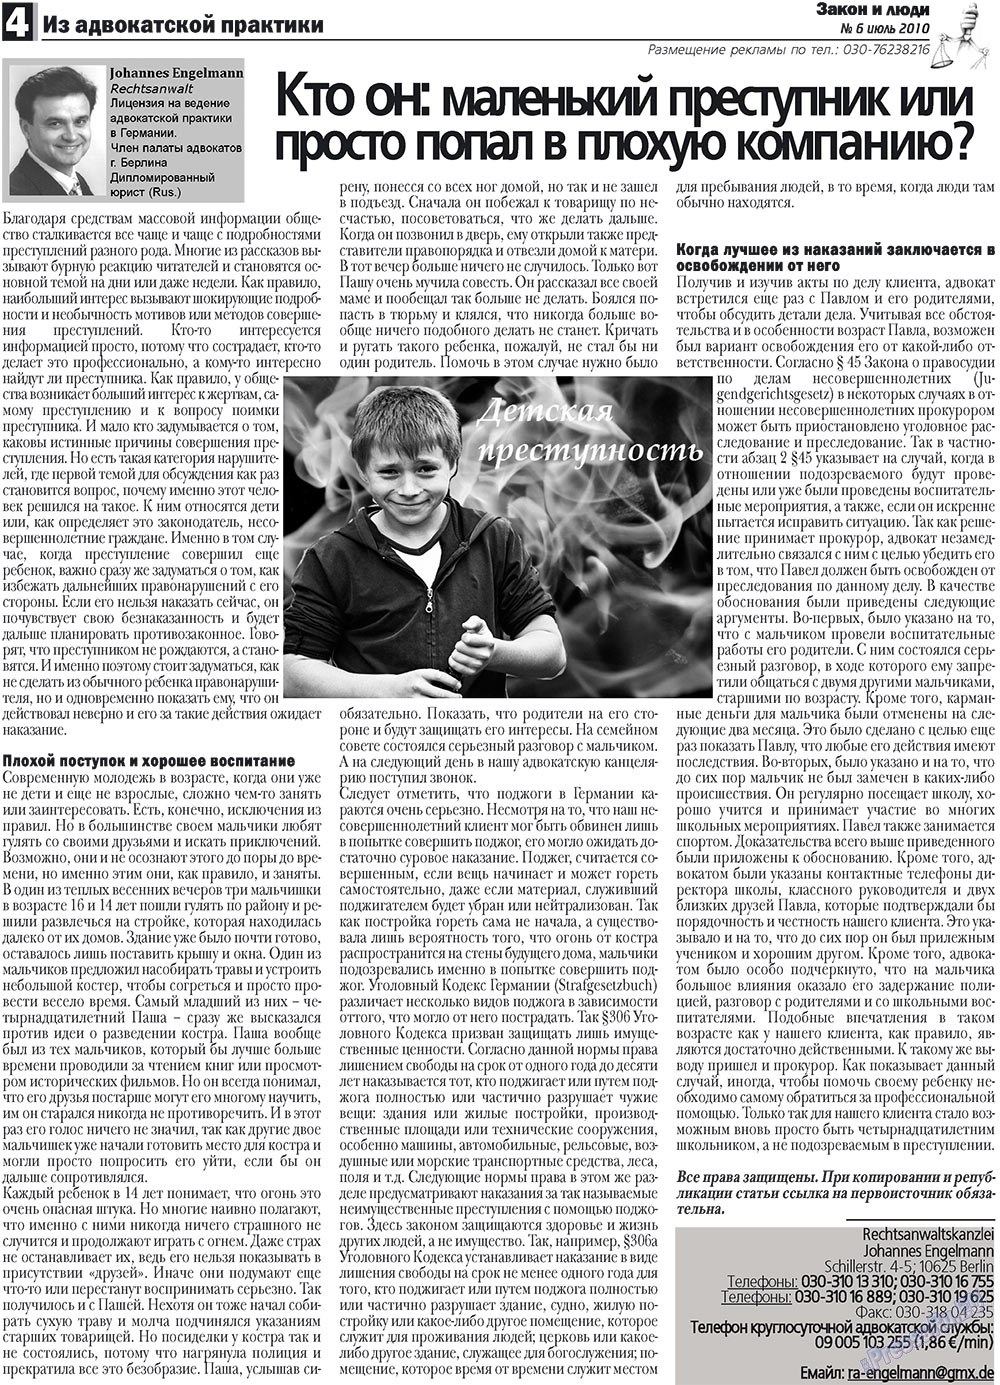 Закон и люди, газета. 2010 №6 стр.4